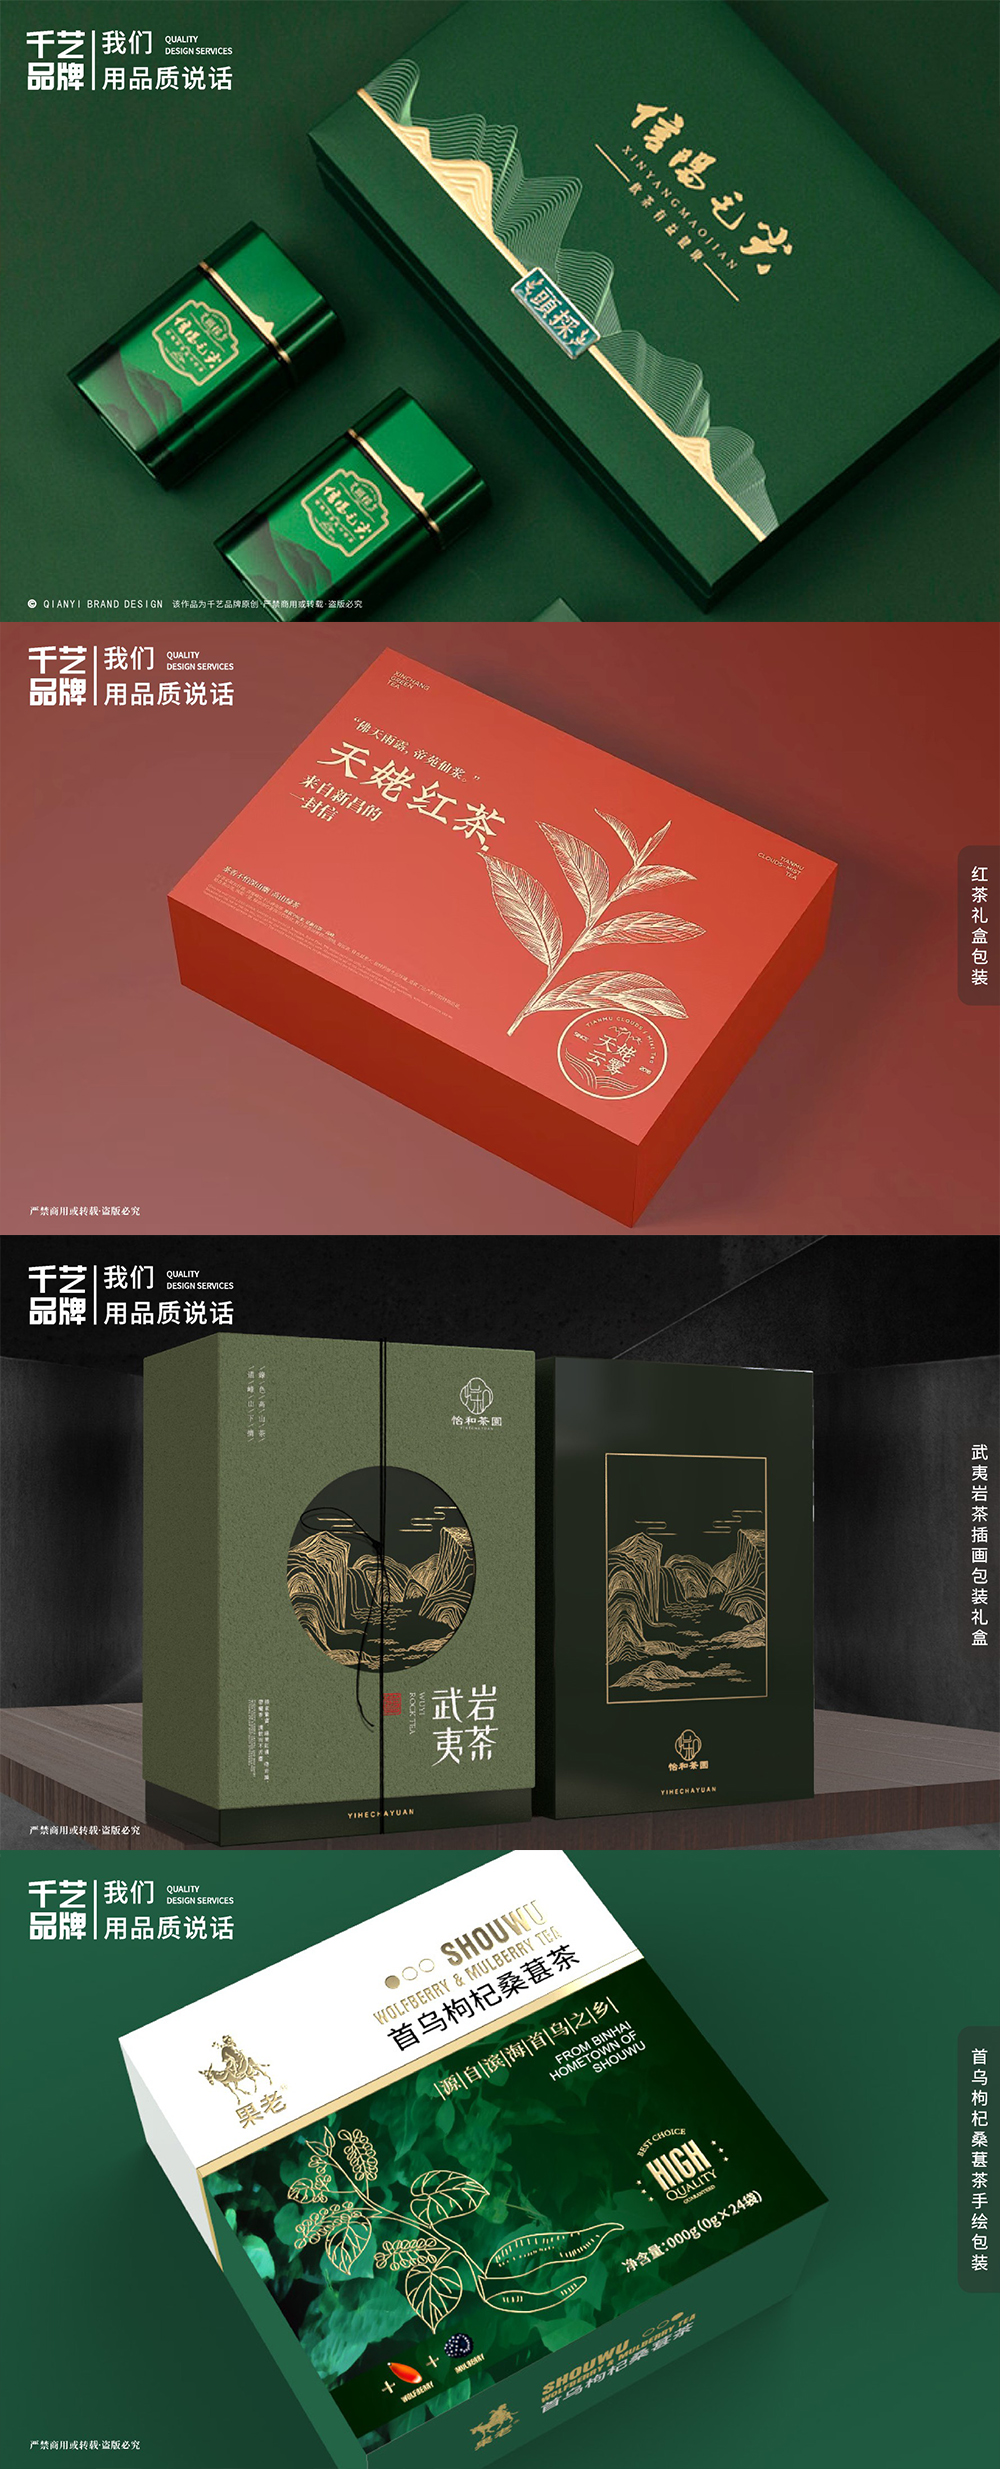 高端礼盒包装茶叶花茶包装瓶贴包装盒包装袋食品包装设计